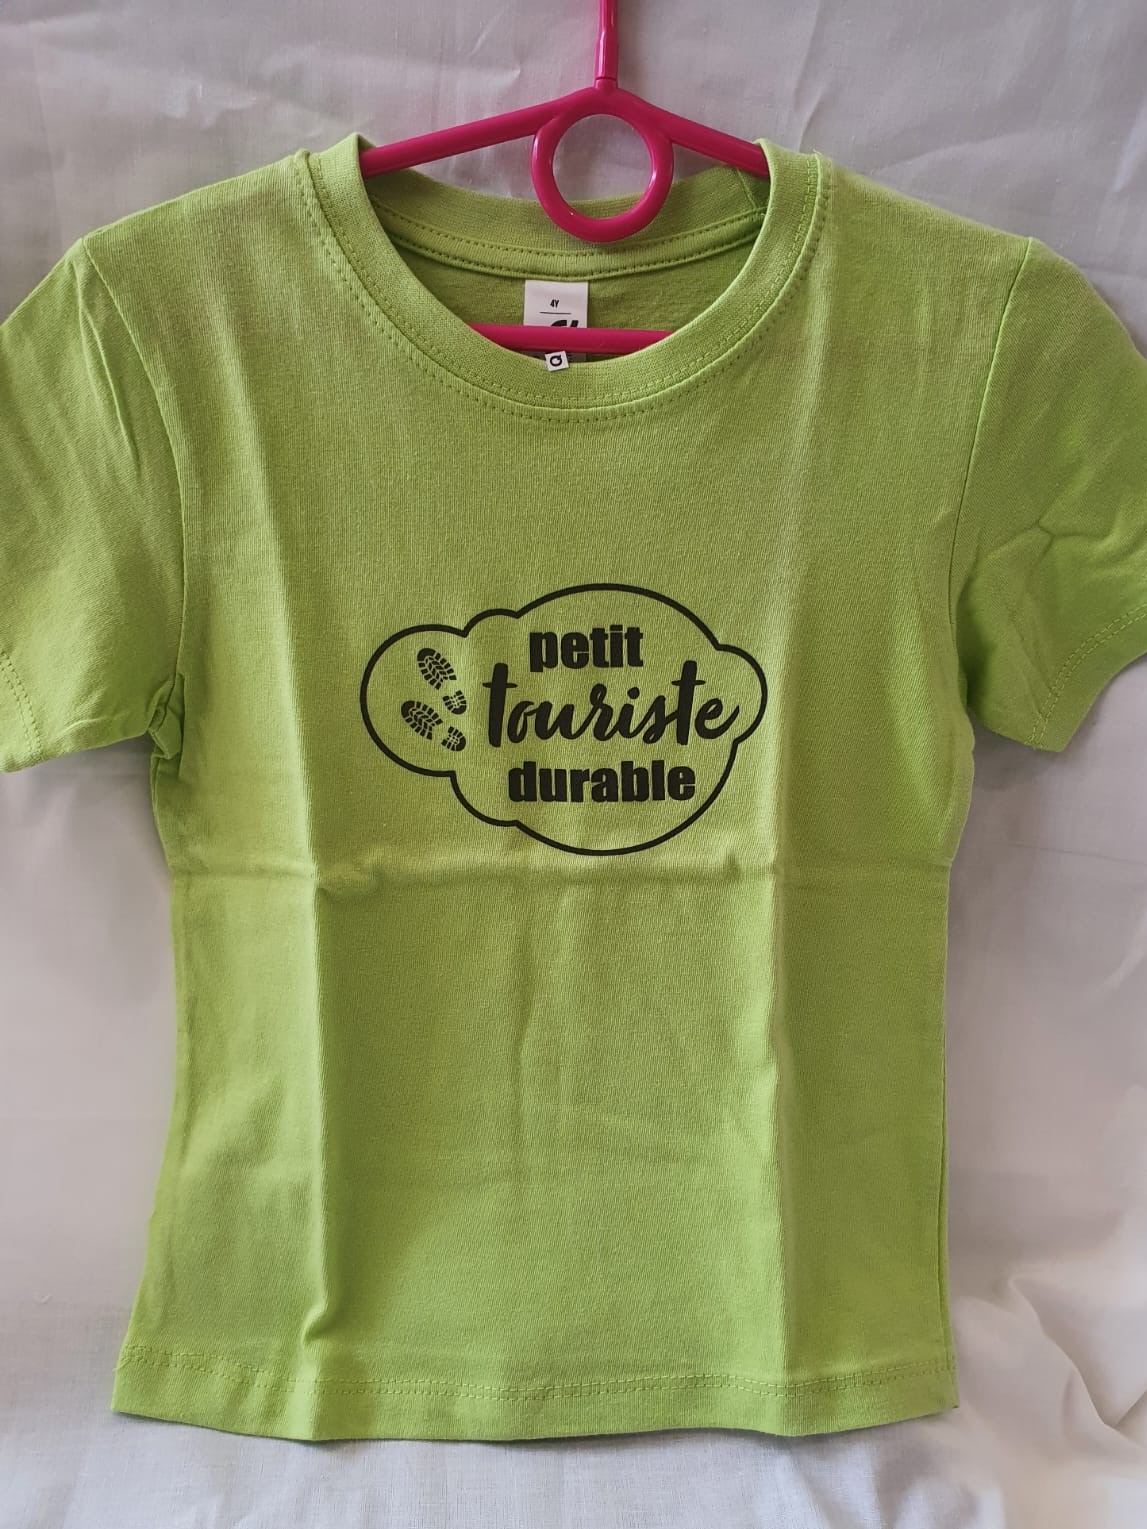 Tee-shirt enfant “Petit touriste durable” vert – 8 ans